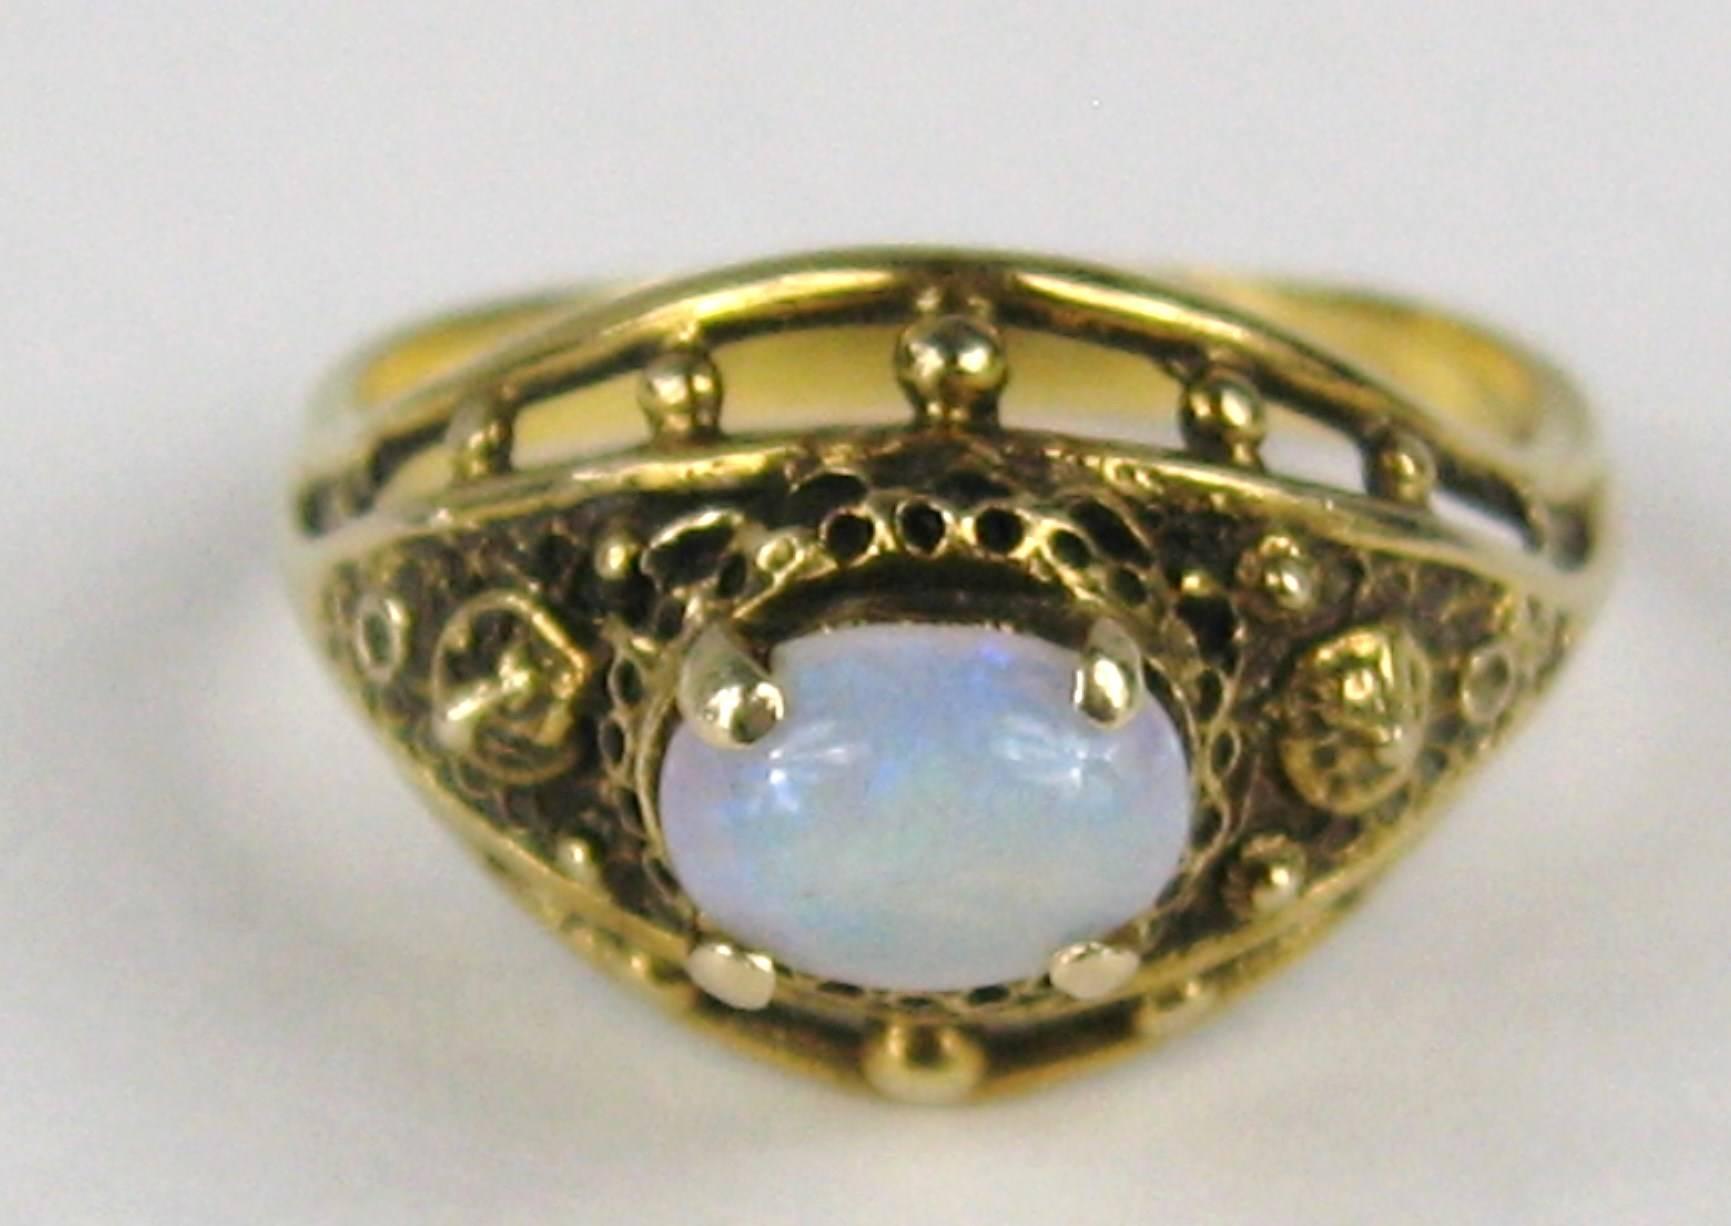 Atemberaubender Opalring mit hoher Zackenfassung. Fassung in 14K Gold.  Ovaler Opal in Zackenfassung. Der Ring ist eine Größe 6,5 und kann von uns oder Ihrem Juwelier angepasst werden. Bitte besuchen Sie unseren Shop für weiteren Schmuck sowie